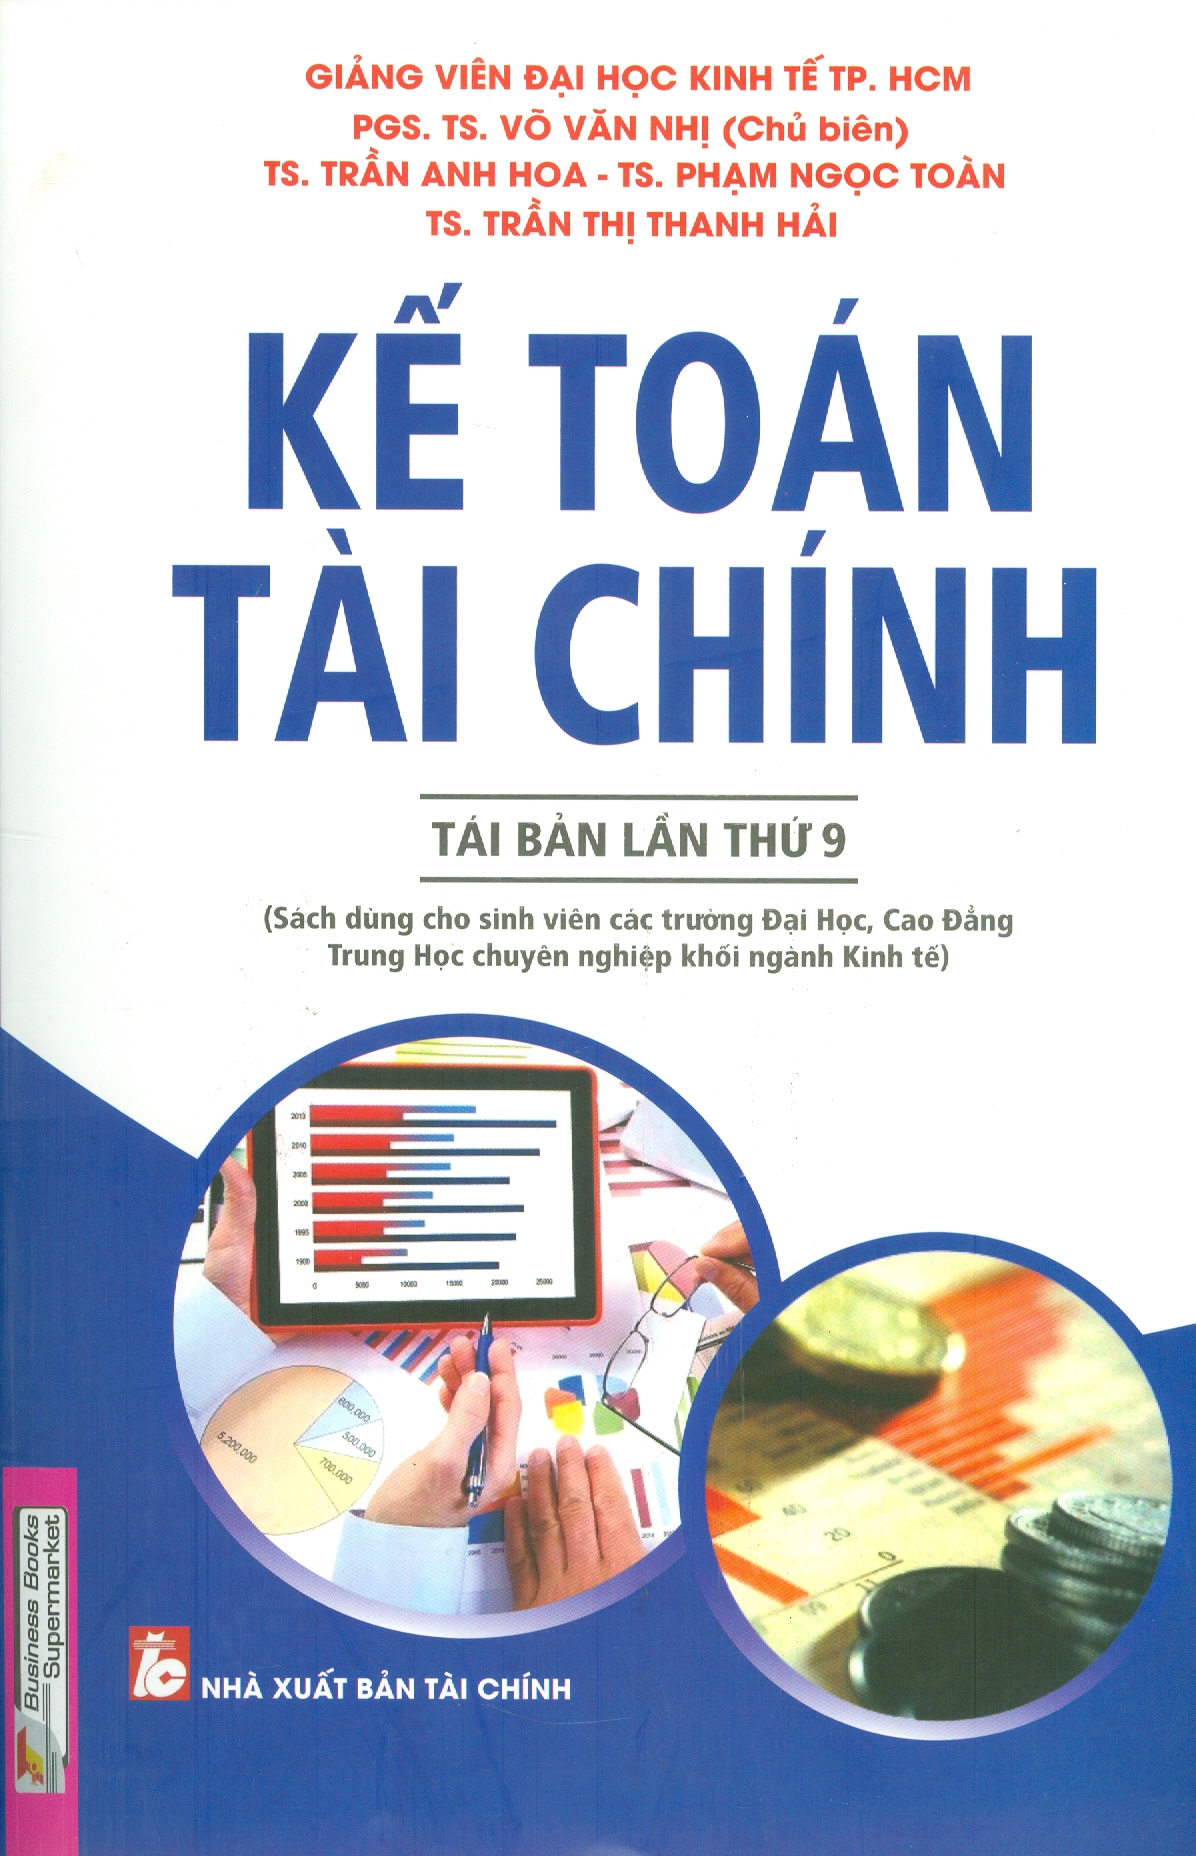 Kế Toán Tài Chính (Tái bản lần thứ 9) - Sách dùng cho sinh viên các trường Đại học, Cao đẳng, Trung học chuyên nghiệp khối ngành Kinh tế